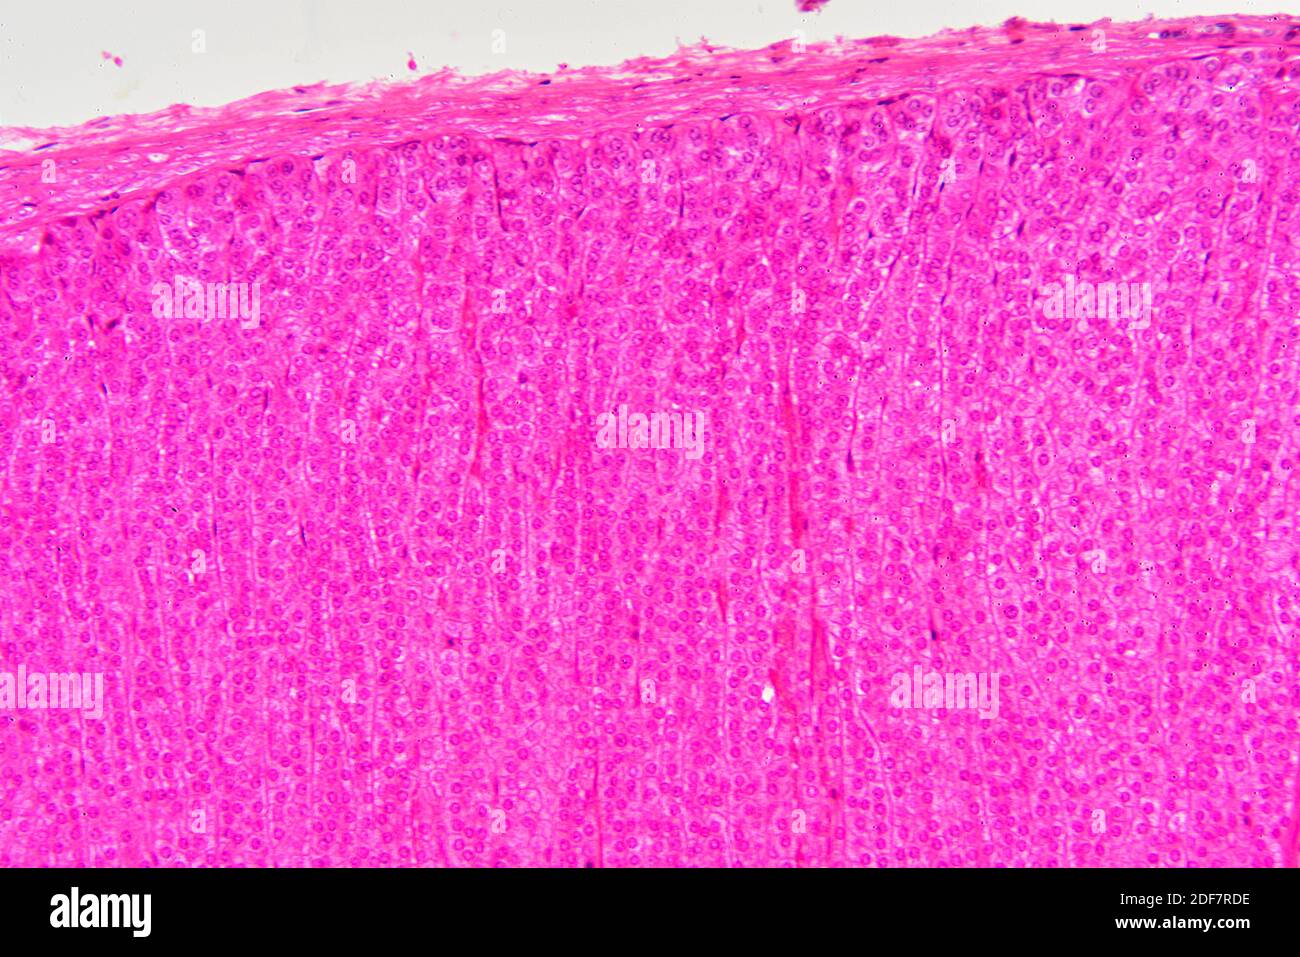 Sección de la glándula suprarrenal humana que muestra de arriba a abajo: Cápsula fibrosa, zona glomerulosa y zona fasciculata. Glándula suprarrenal humana o suprarrenal Foto de stock